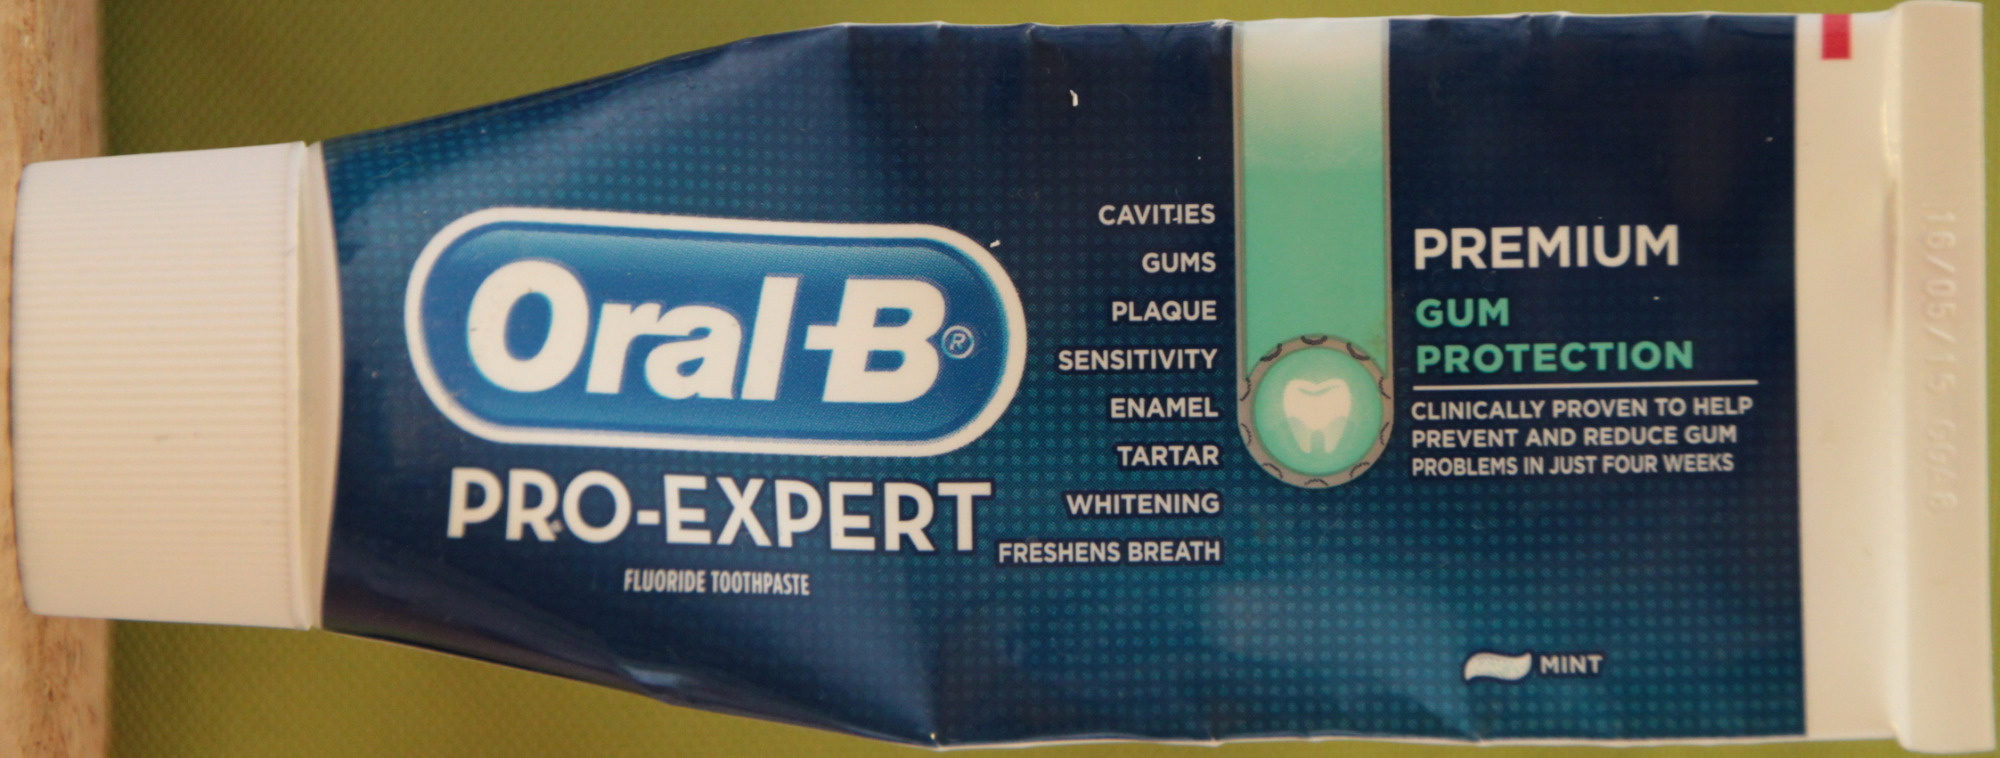 Pro-Expert Premium Gum Protection - Produit - fr